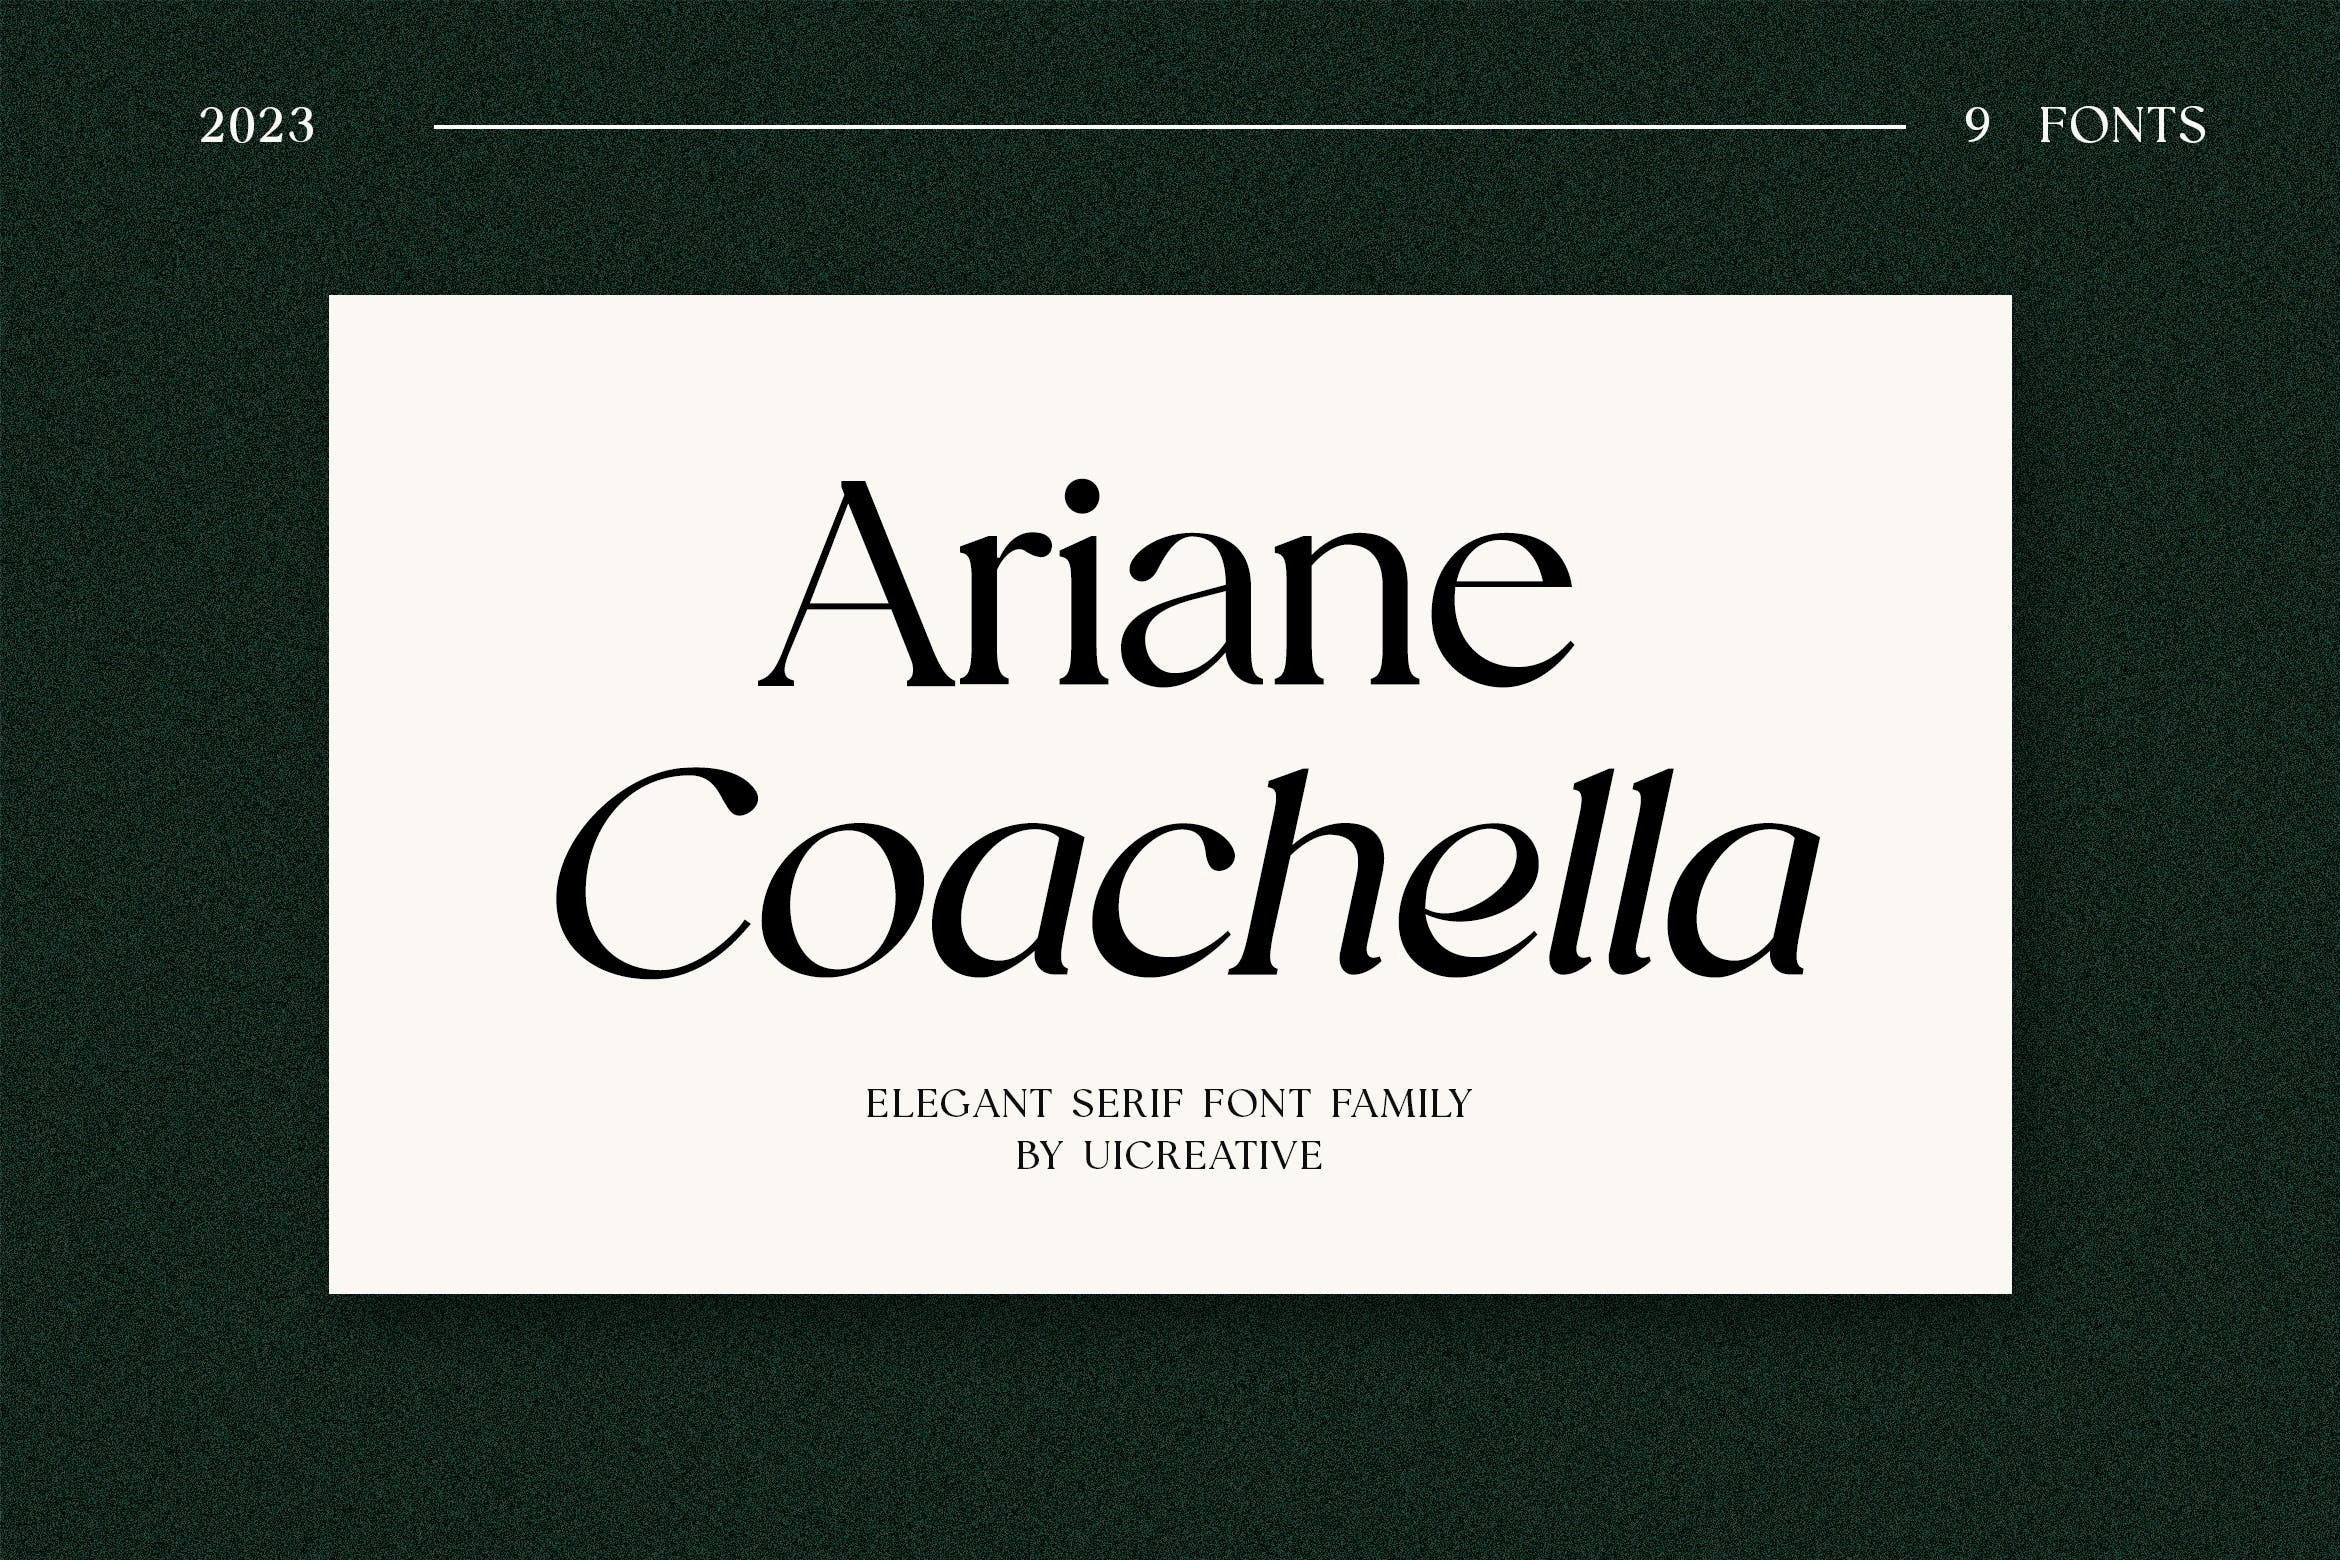 Ejemplo de fuente Ariane Coachella